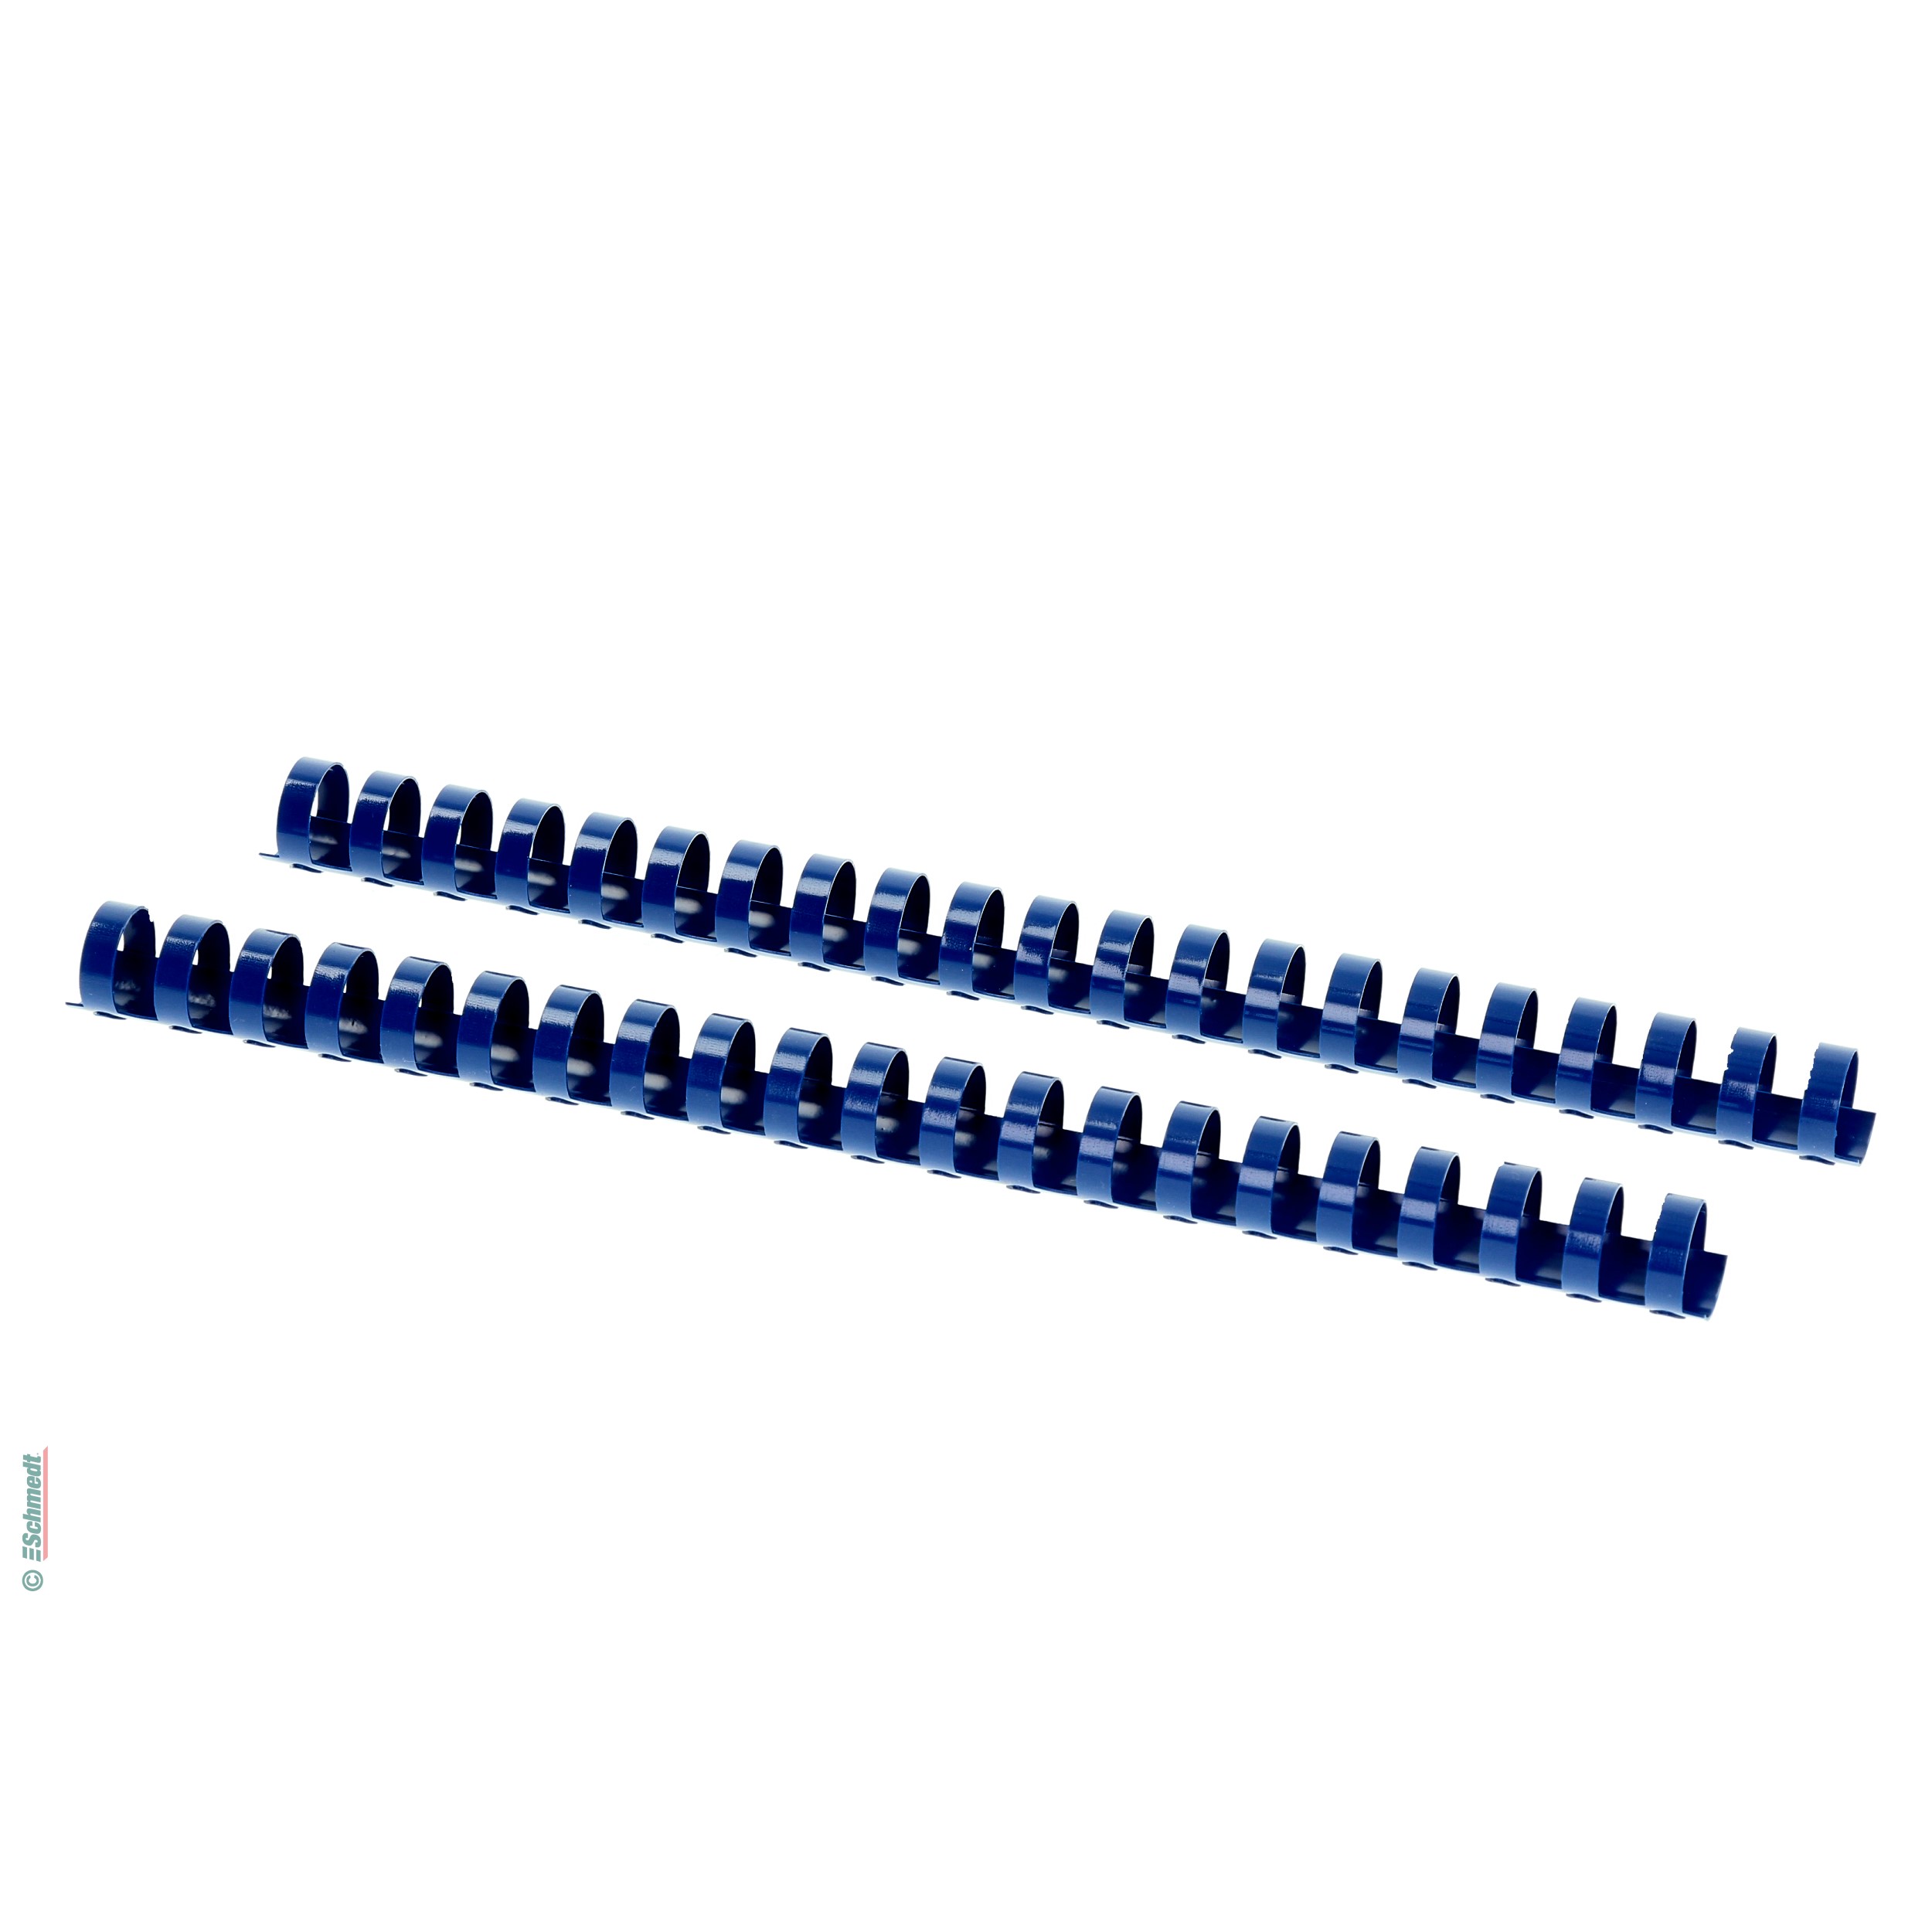 Plastikbinderücken - rund  - farbig - Durchmesser (in mm) 25 - Farbe blau - » Optimaler Binderücken-Ø = Blockstärke + 3 mm... - Bild-1